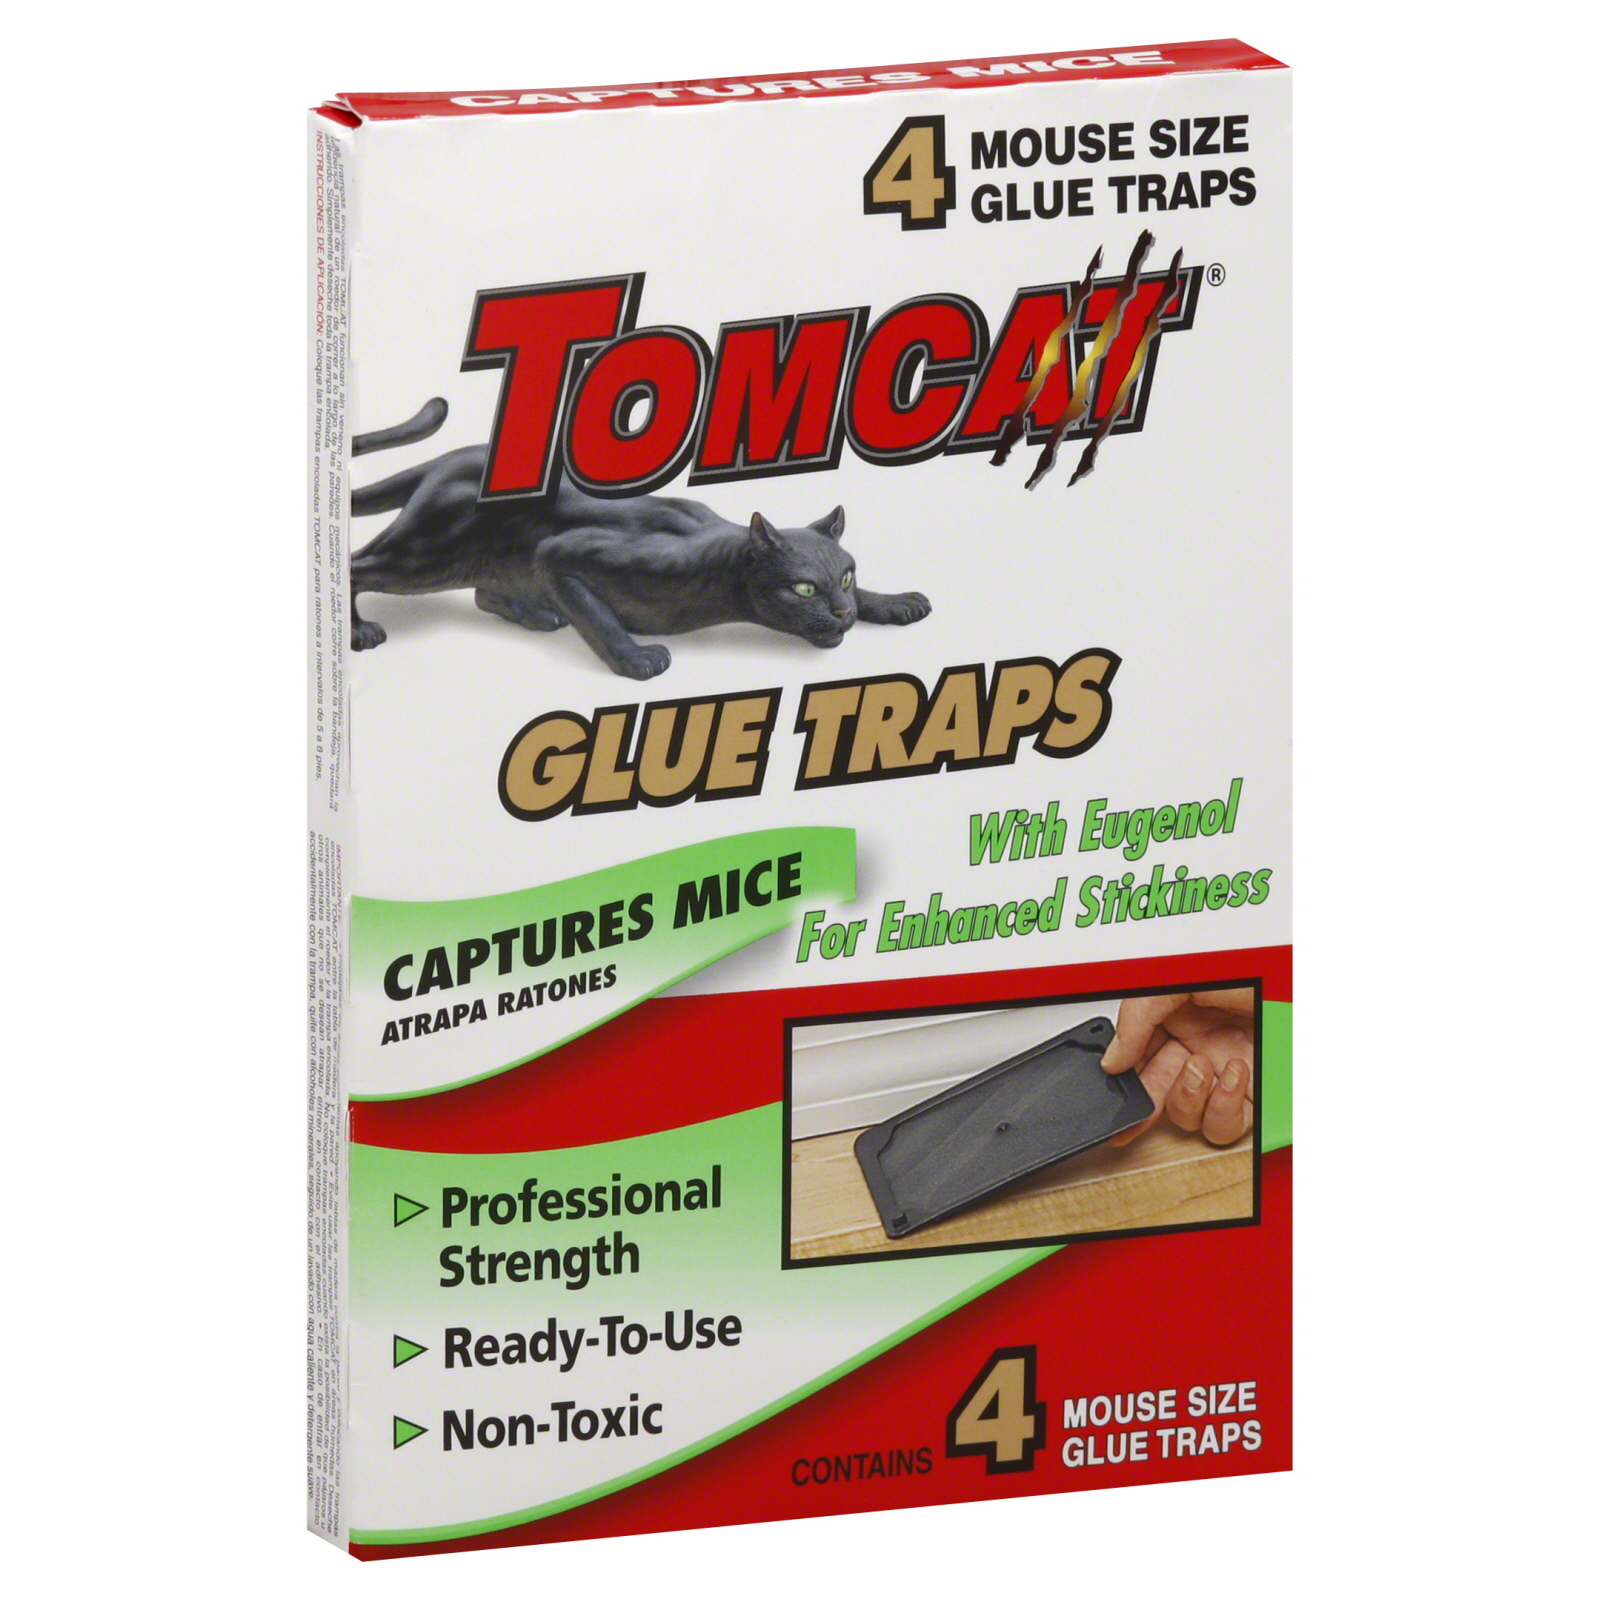 Tomcat Glue Traps, Mouse Size 4 traps